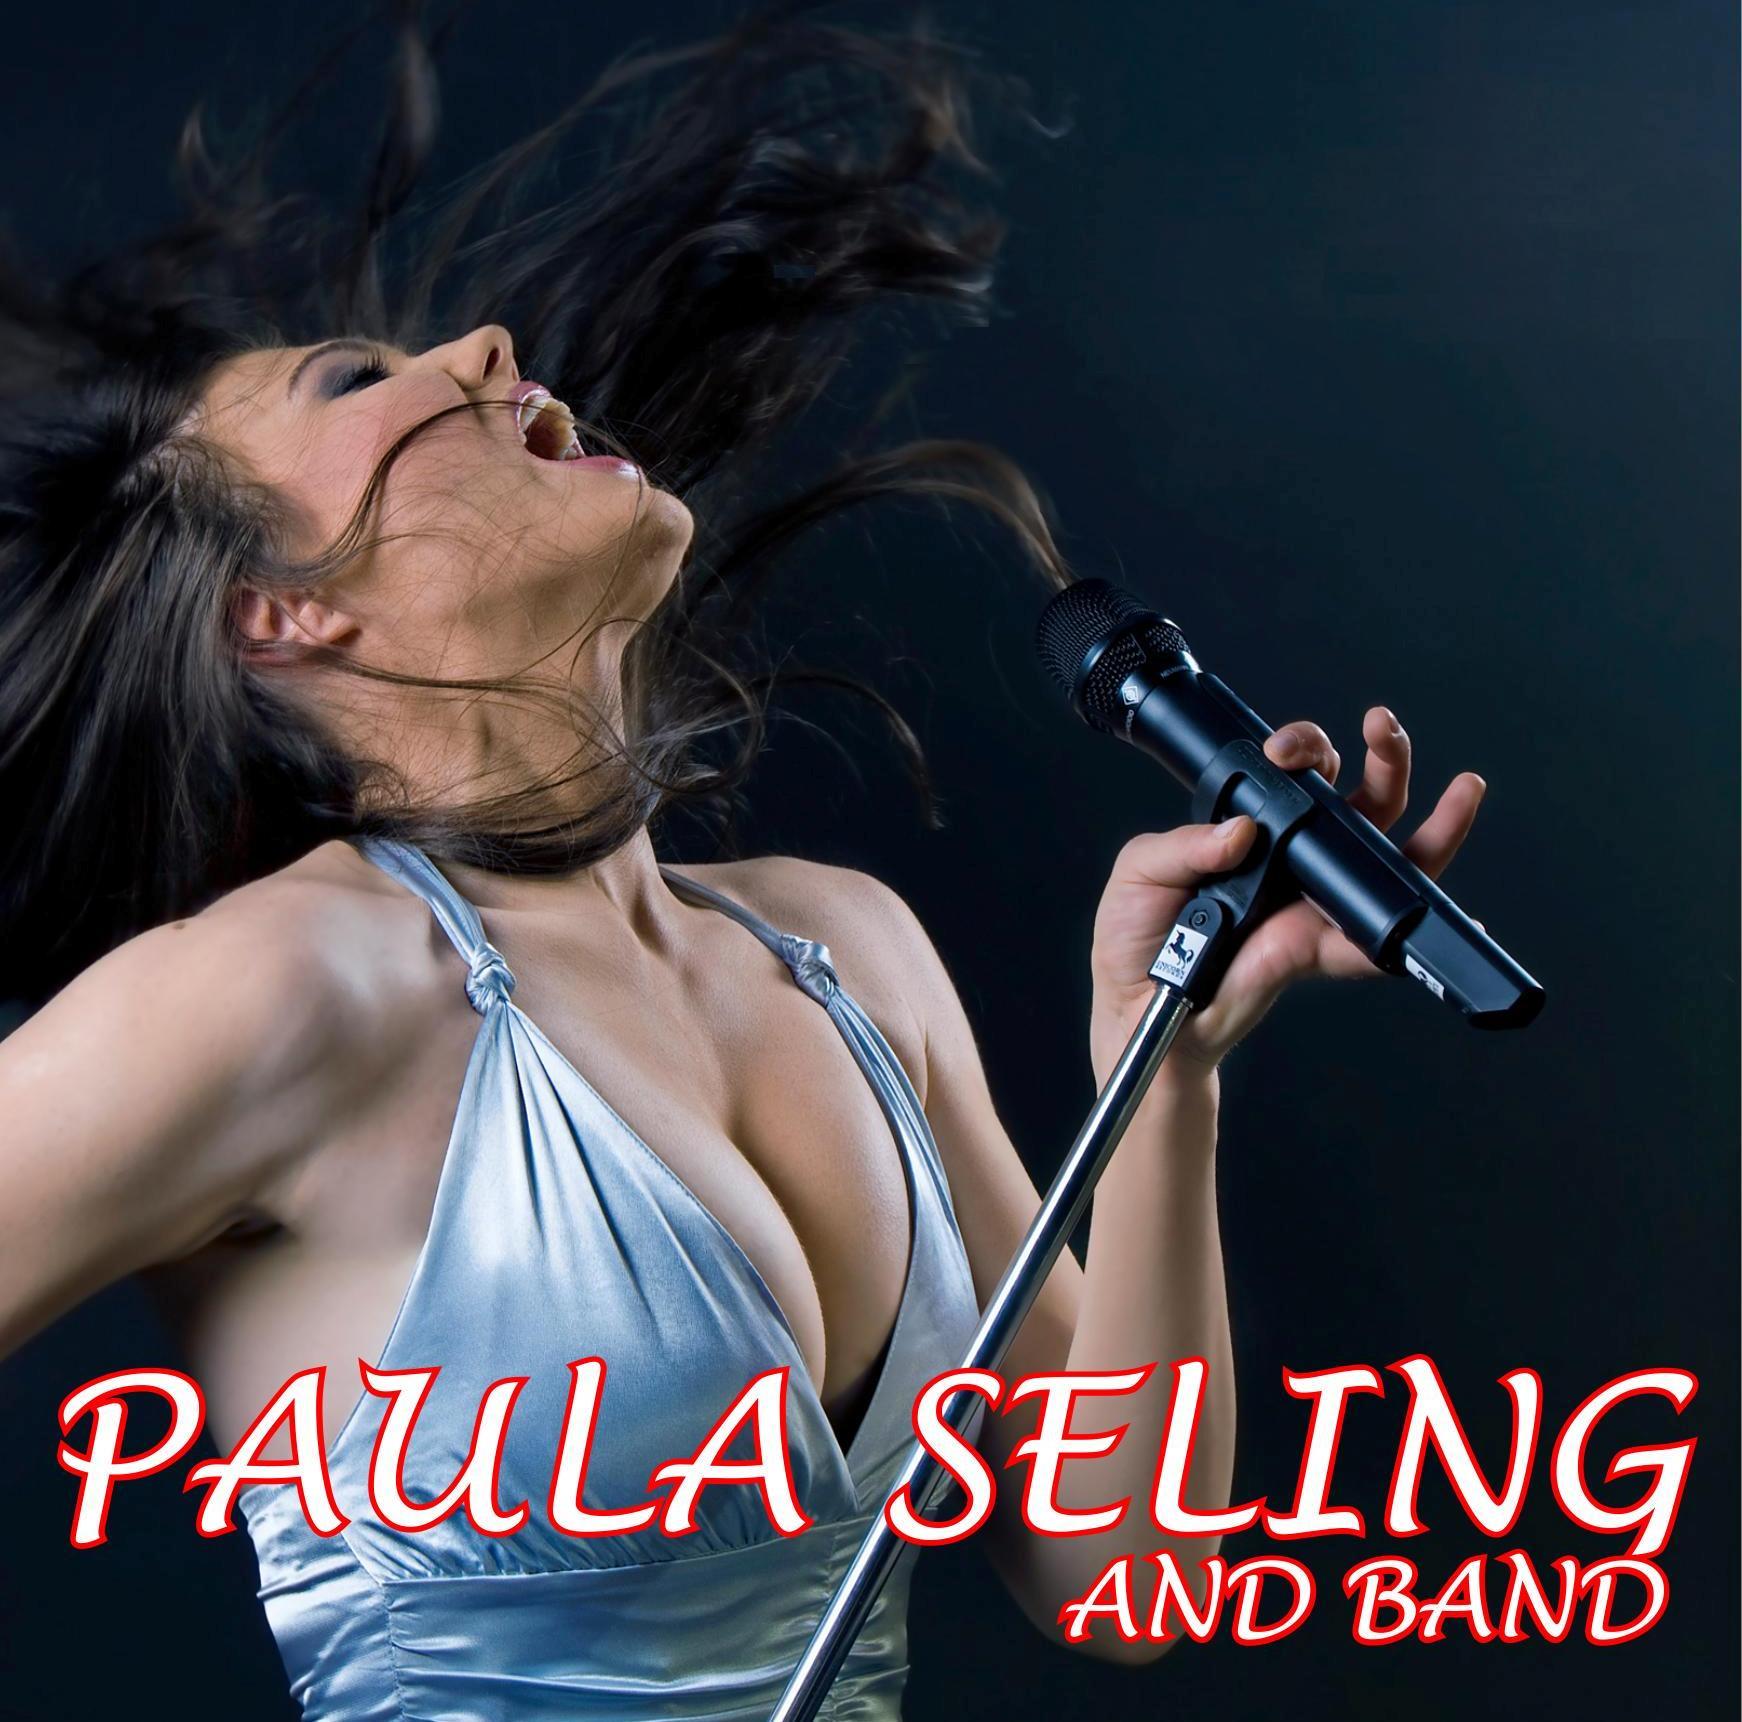 Paula Seling